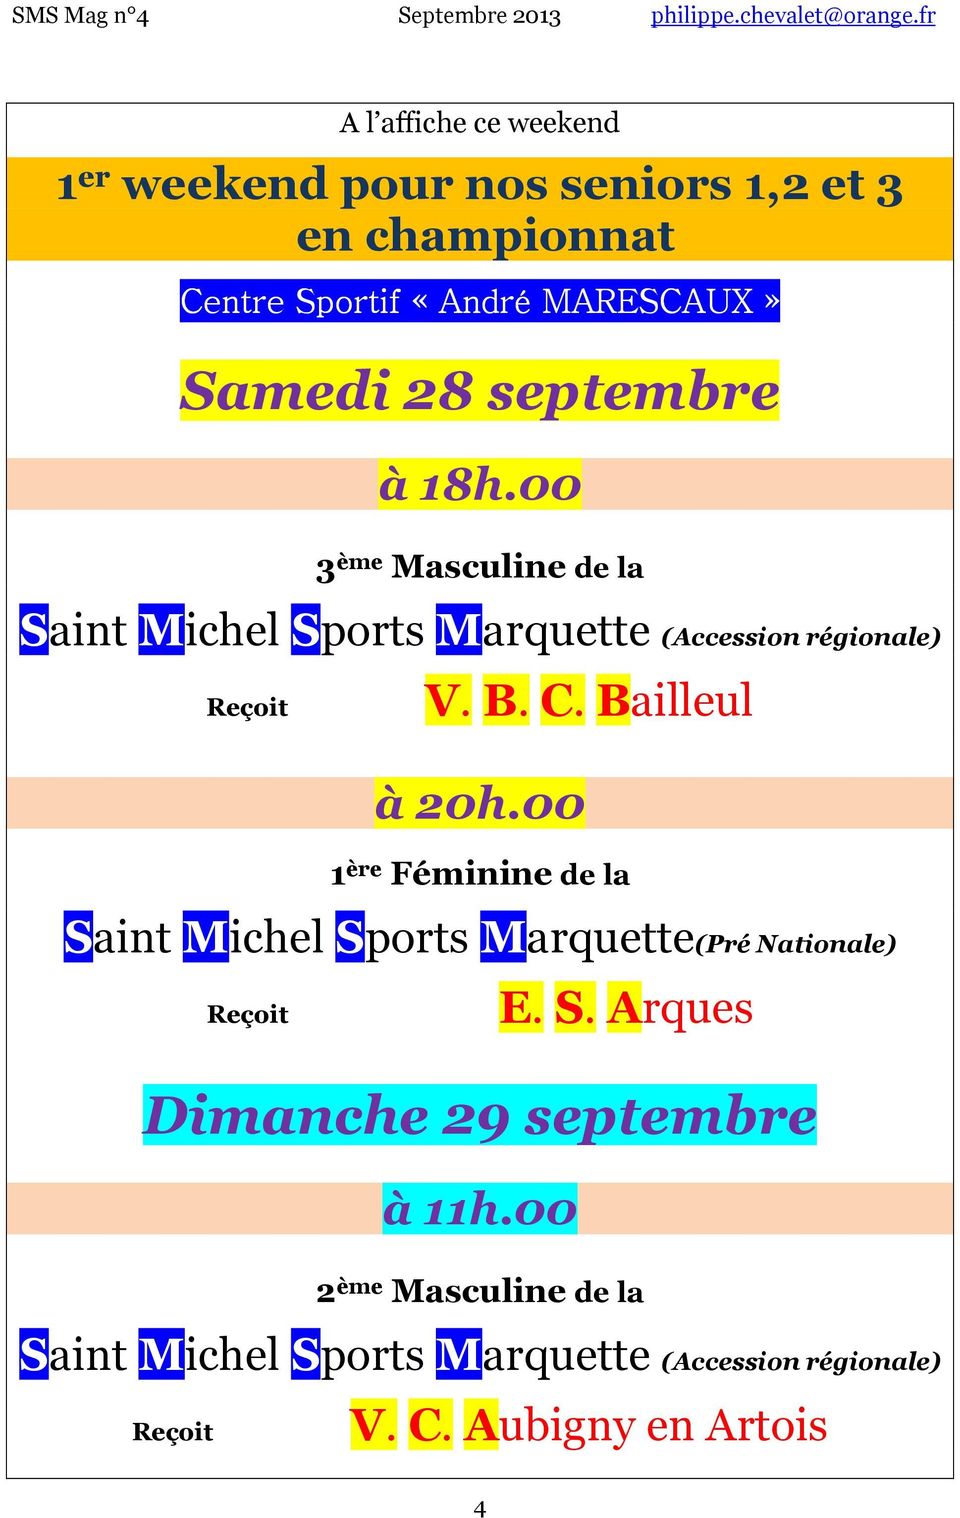 Bailleul 20h.00 1 ère Féminine de la Saint Michel Sports Marquette(Pré Nationale) E. S. Arques Dimanche 29 septembre 11h.